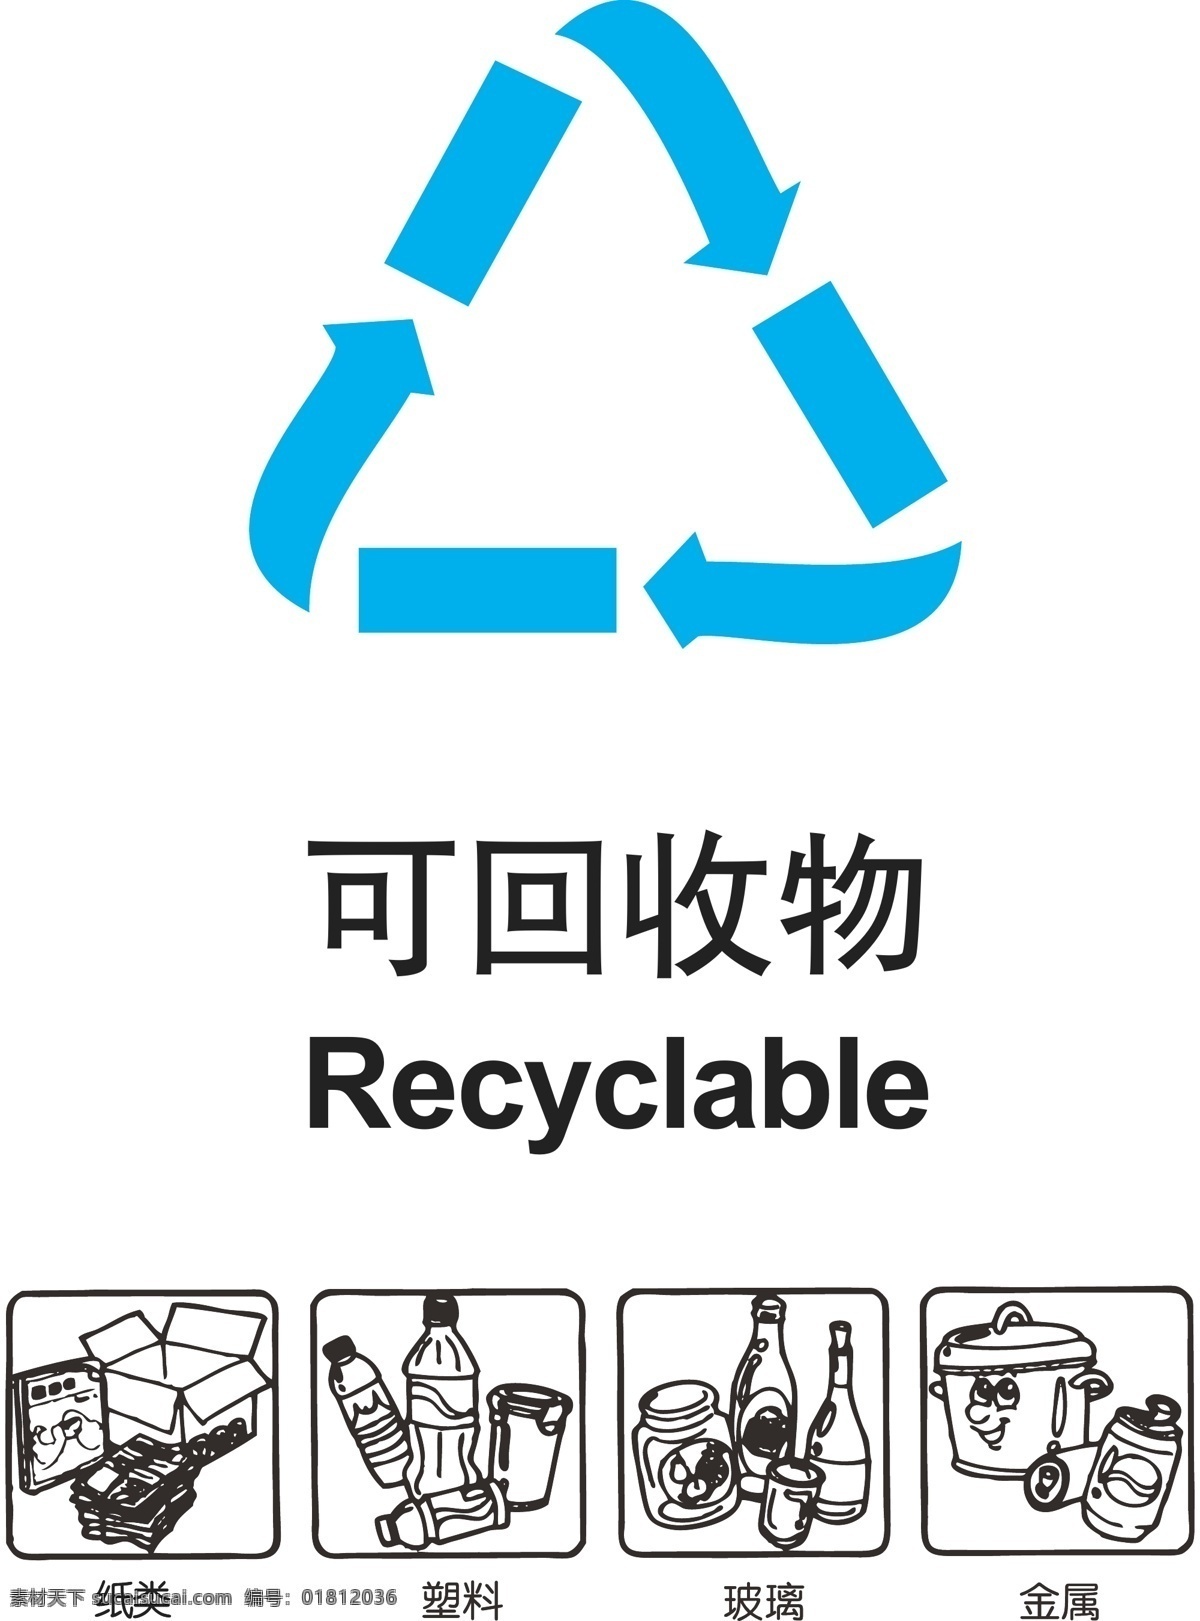 回收 物 带 分类 图 垃圾回收 公共标识标志 标识标志图标 矢量